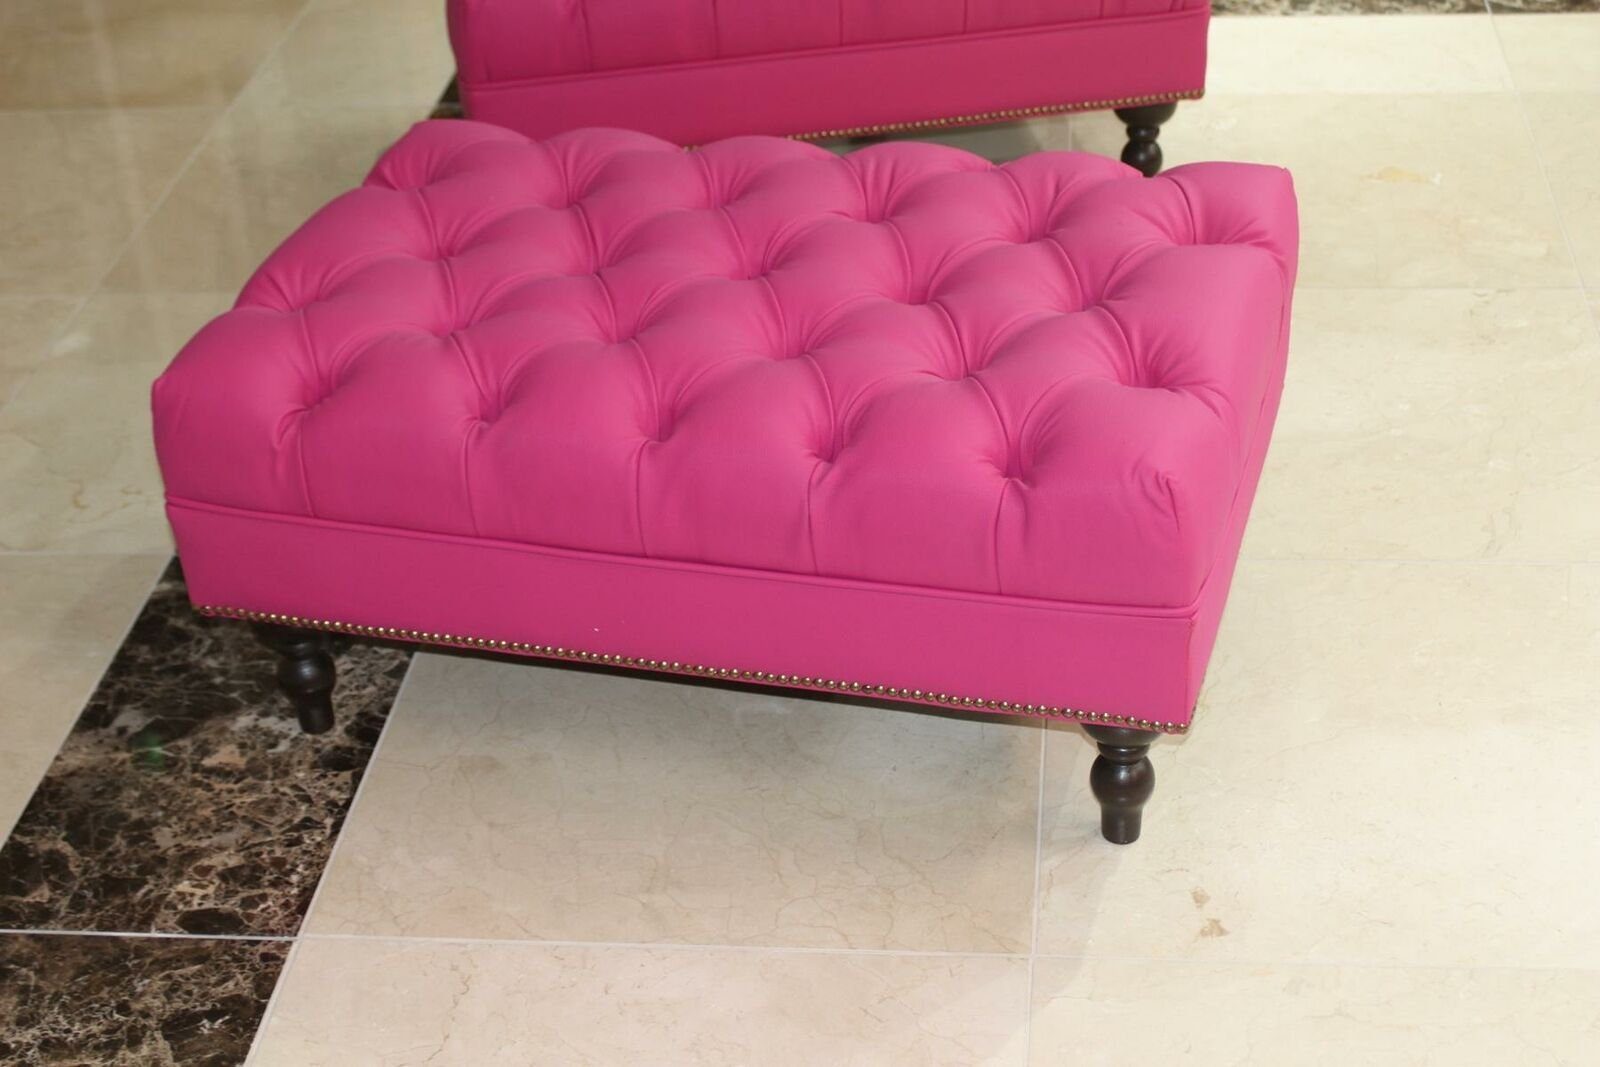 New JVmoebel Luxury Textile Stool Rosa Design Modern Soft Pouffe Sofort Elegant Footstool Hocker